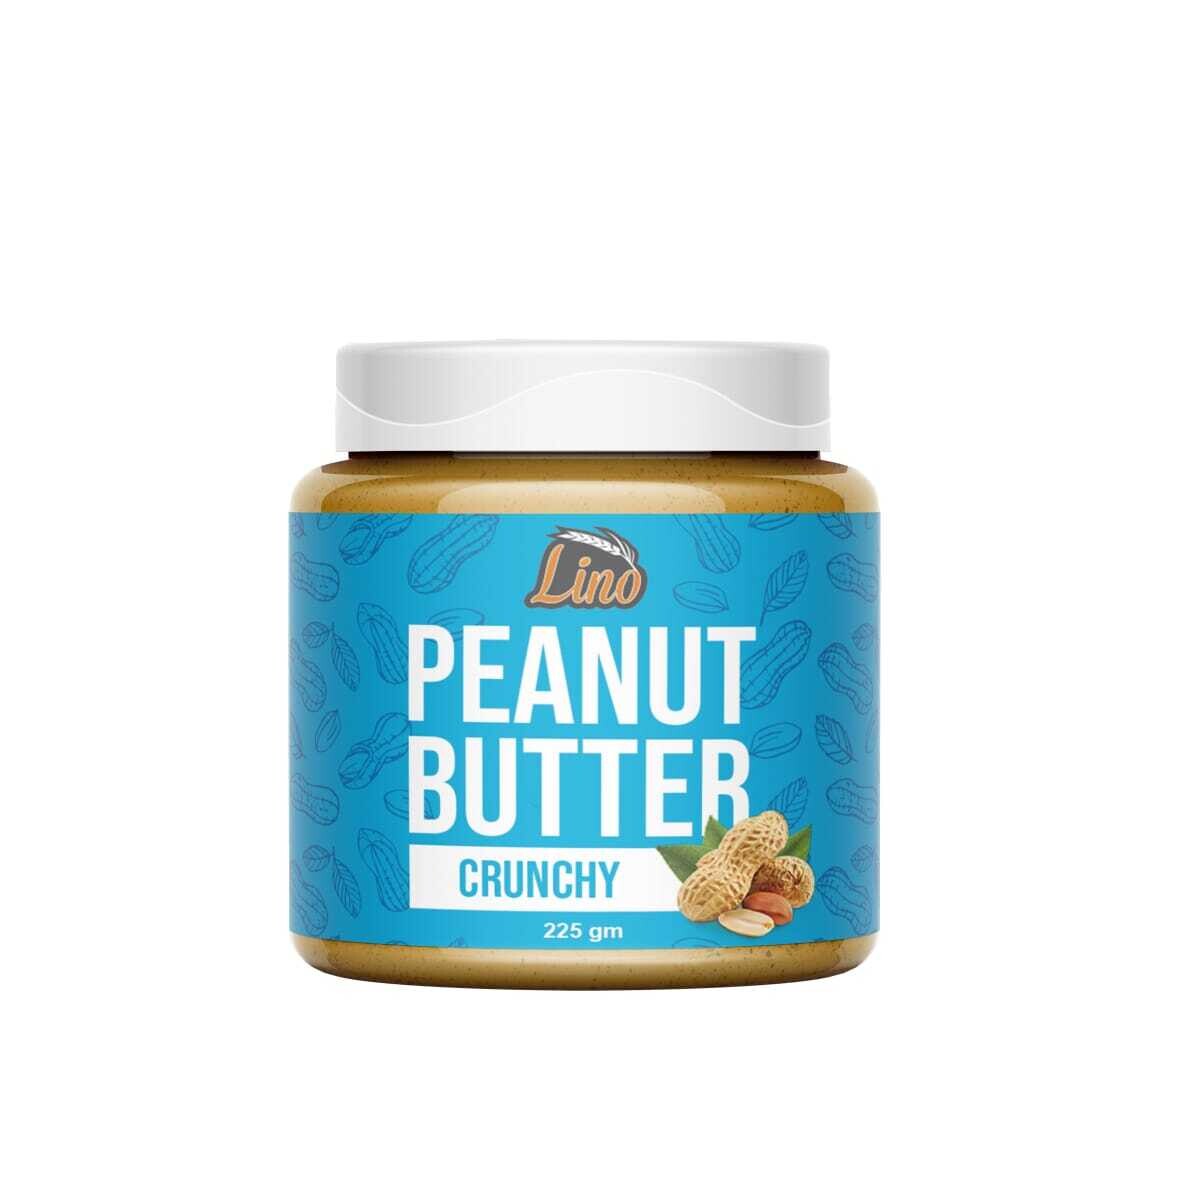 Lino Peanut butter 340g Crunchy